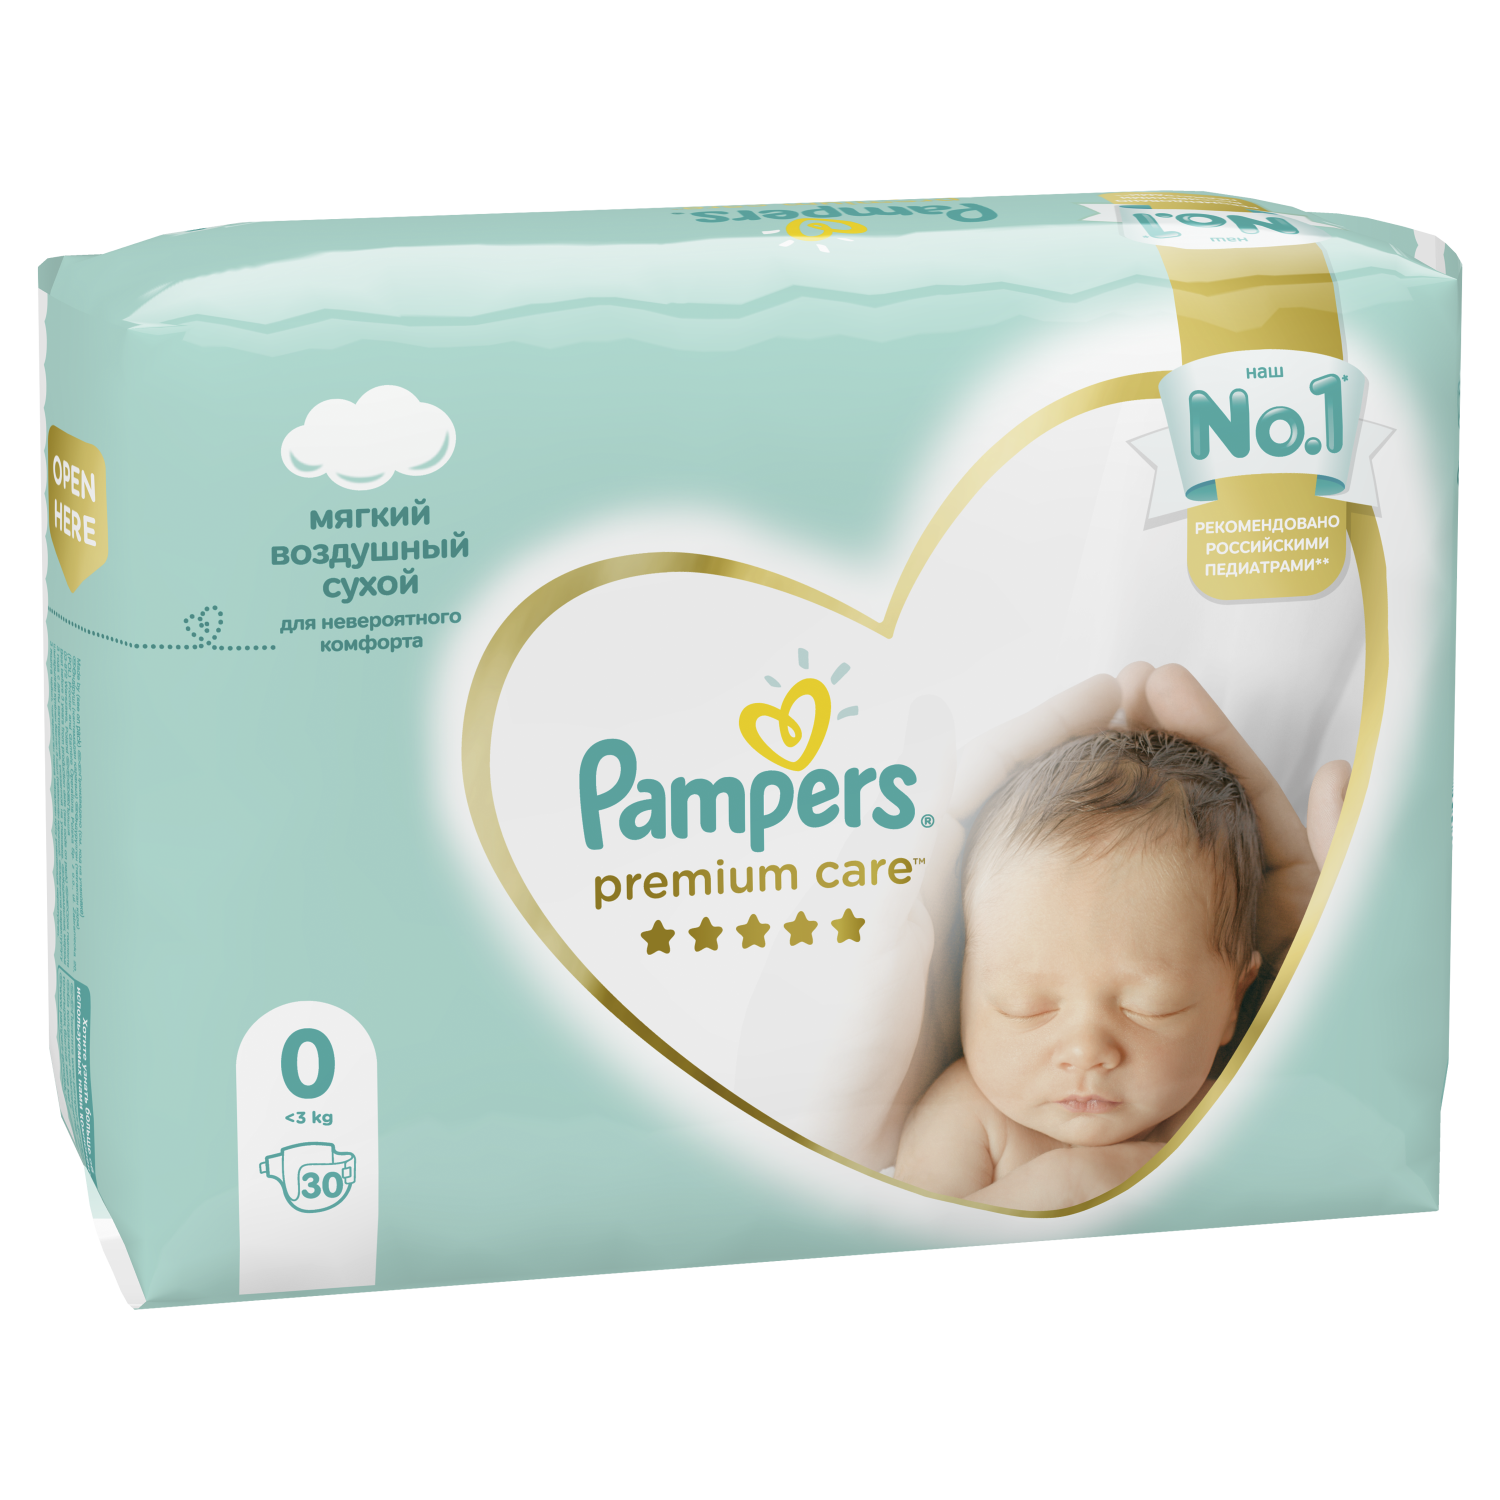 pampers premium care newborn отзывы